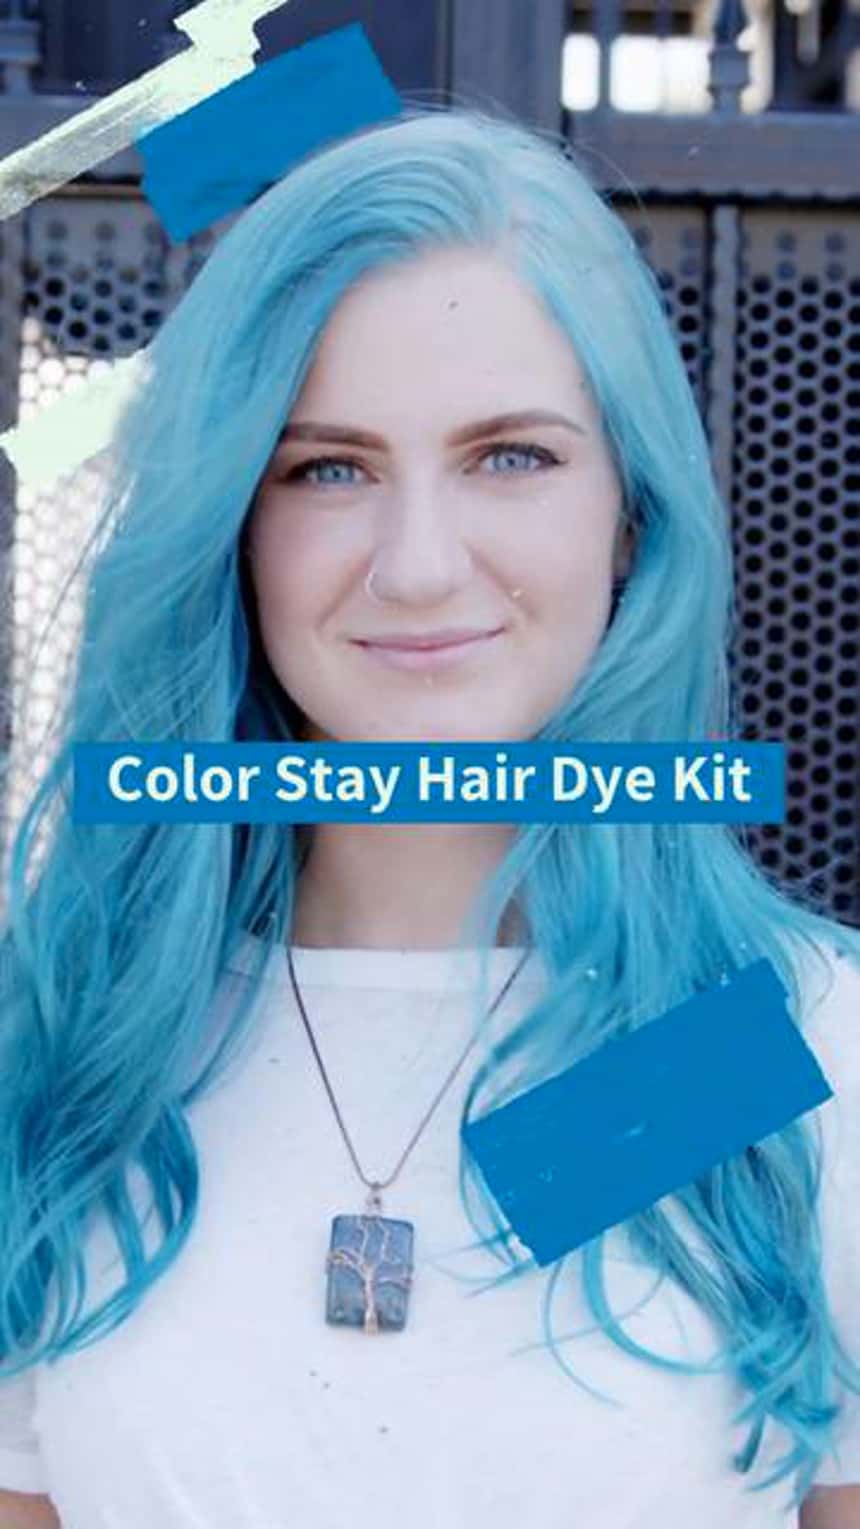 Démo produit TikTok montrant une personne aux cheveux bleus. Le texte se lit comme suit : « Kit de teinture pour cheveux ».